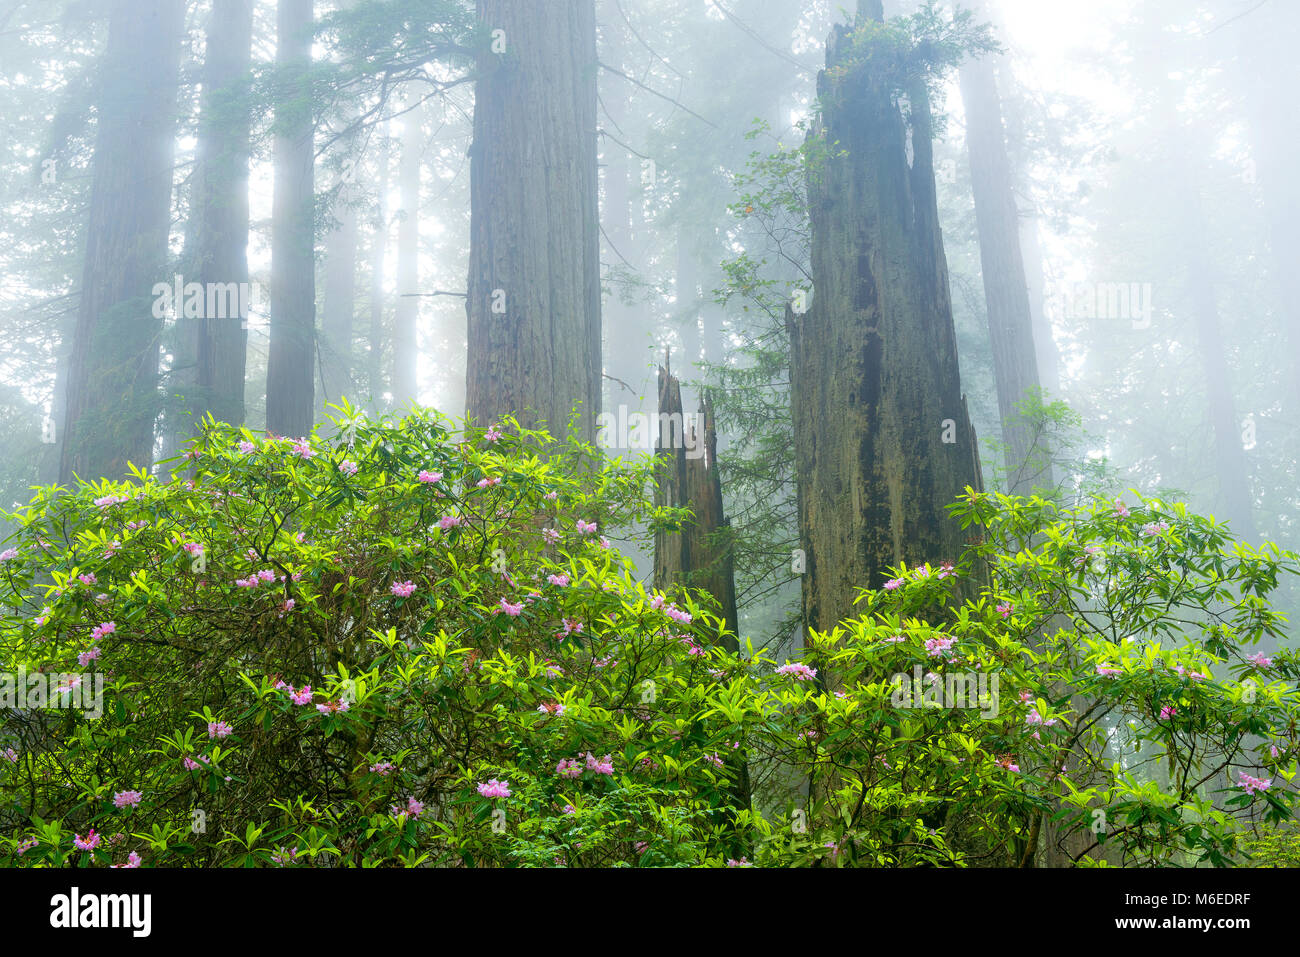 Rhododendron Bloom, Redwoods, nebbia costiera, la dannazione Creek, del Norte stato Redwoods, Parco Nazionale di Redwood e parchi statali, California Foto Stock